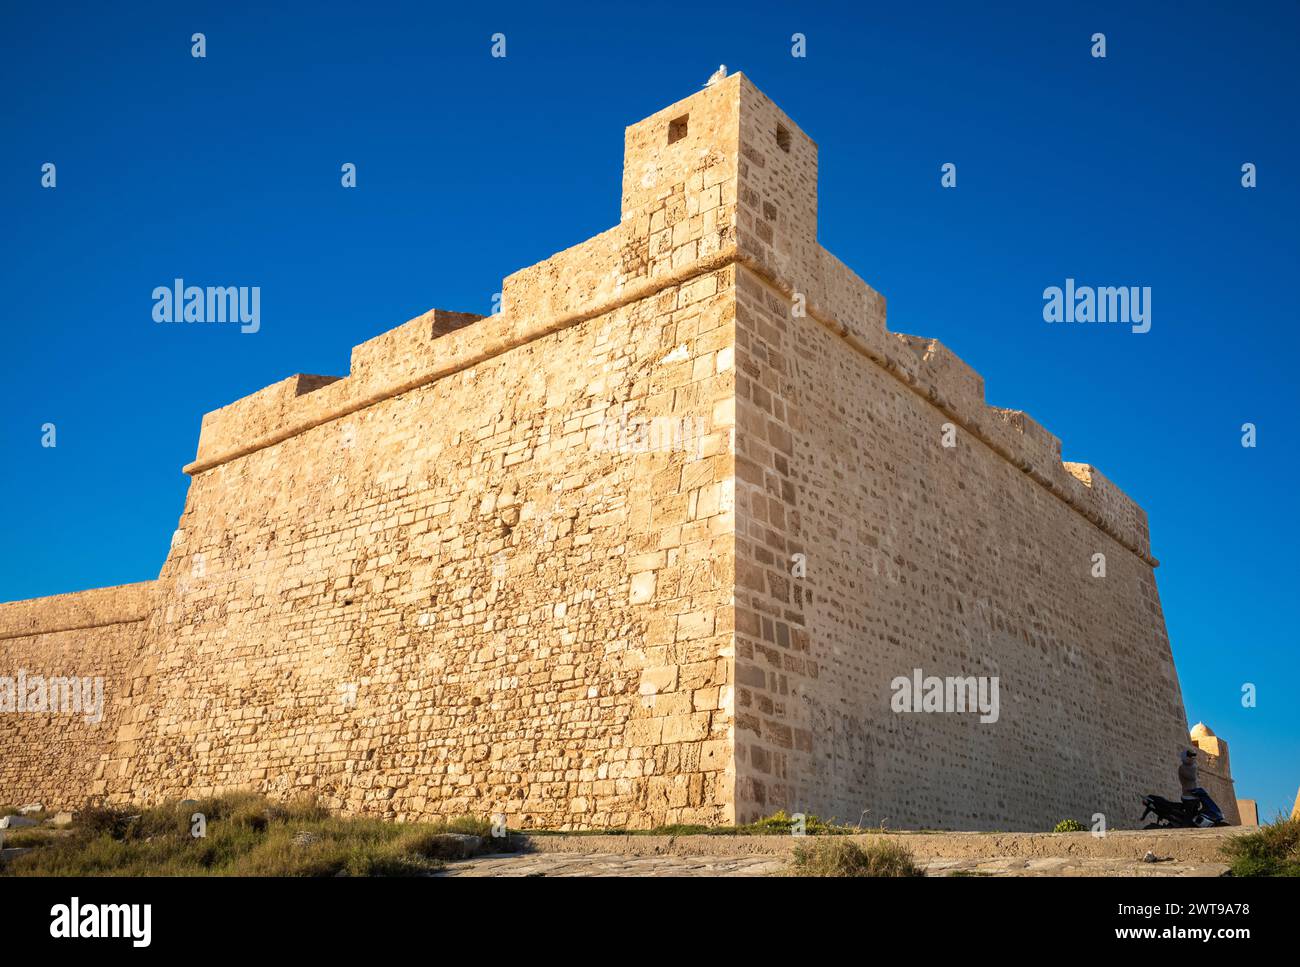 Merlature difensive all'angolo sud-est del Borj El-Kebir, o grande forte, il forte ottomano a Mahdia, in Tunisia. Foto Stock